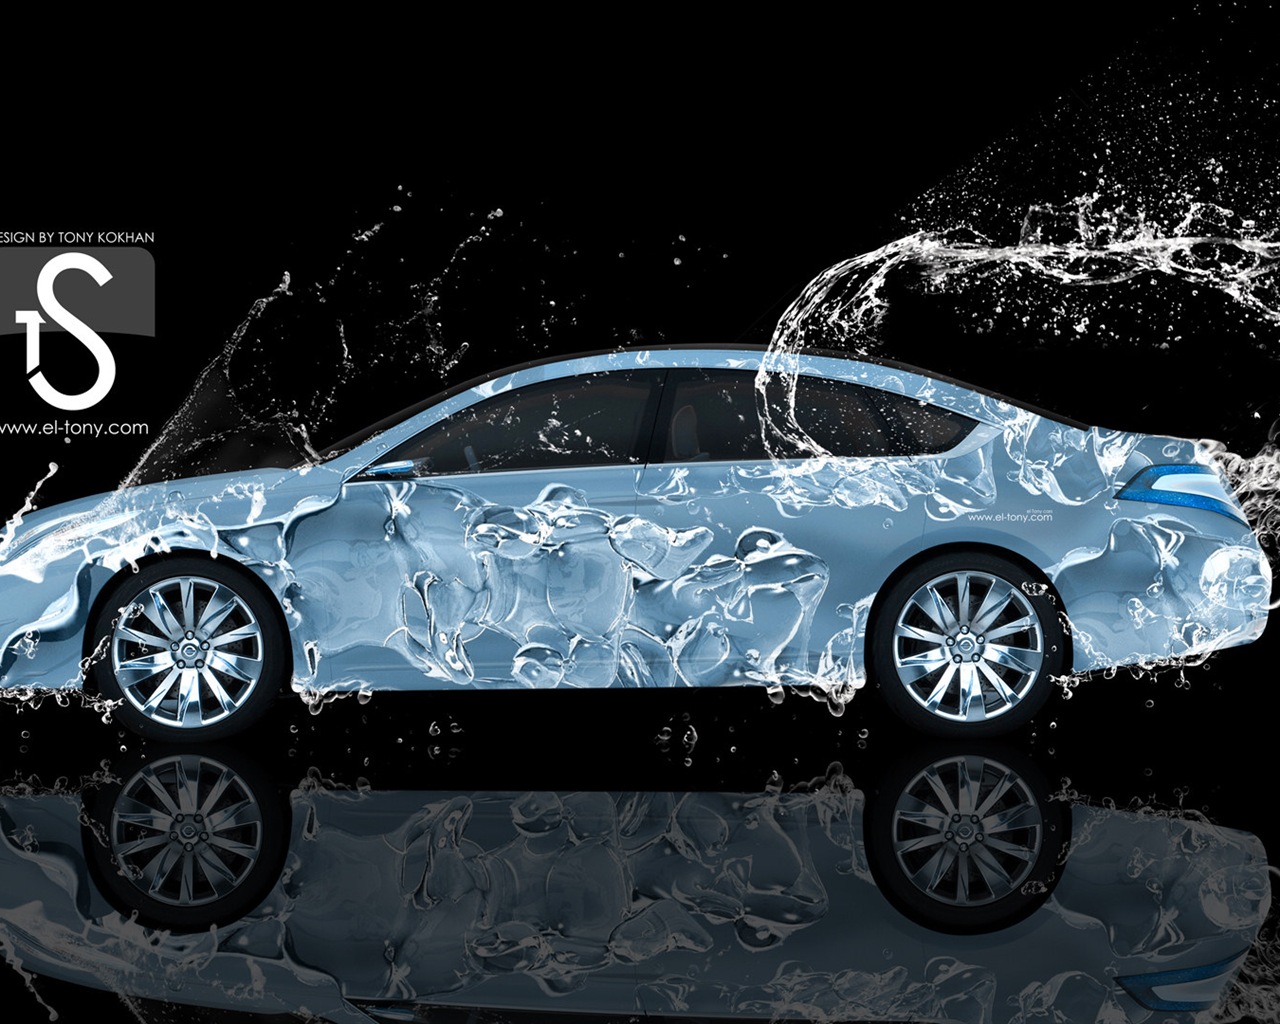 Wassertropfen spritzen, schönes Auto kreative Design Tapeten #15 - 1280x1024